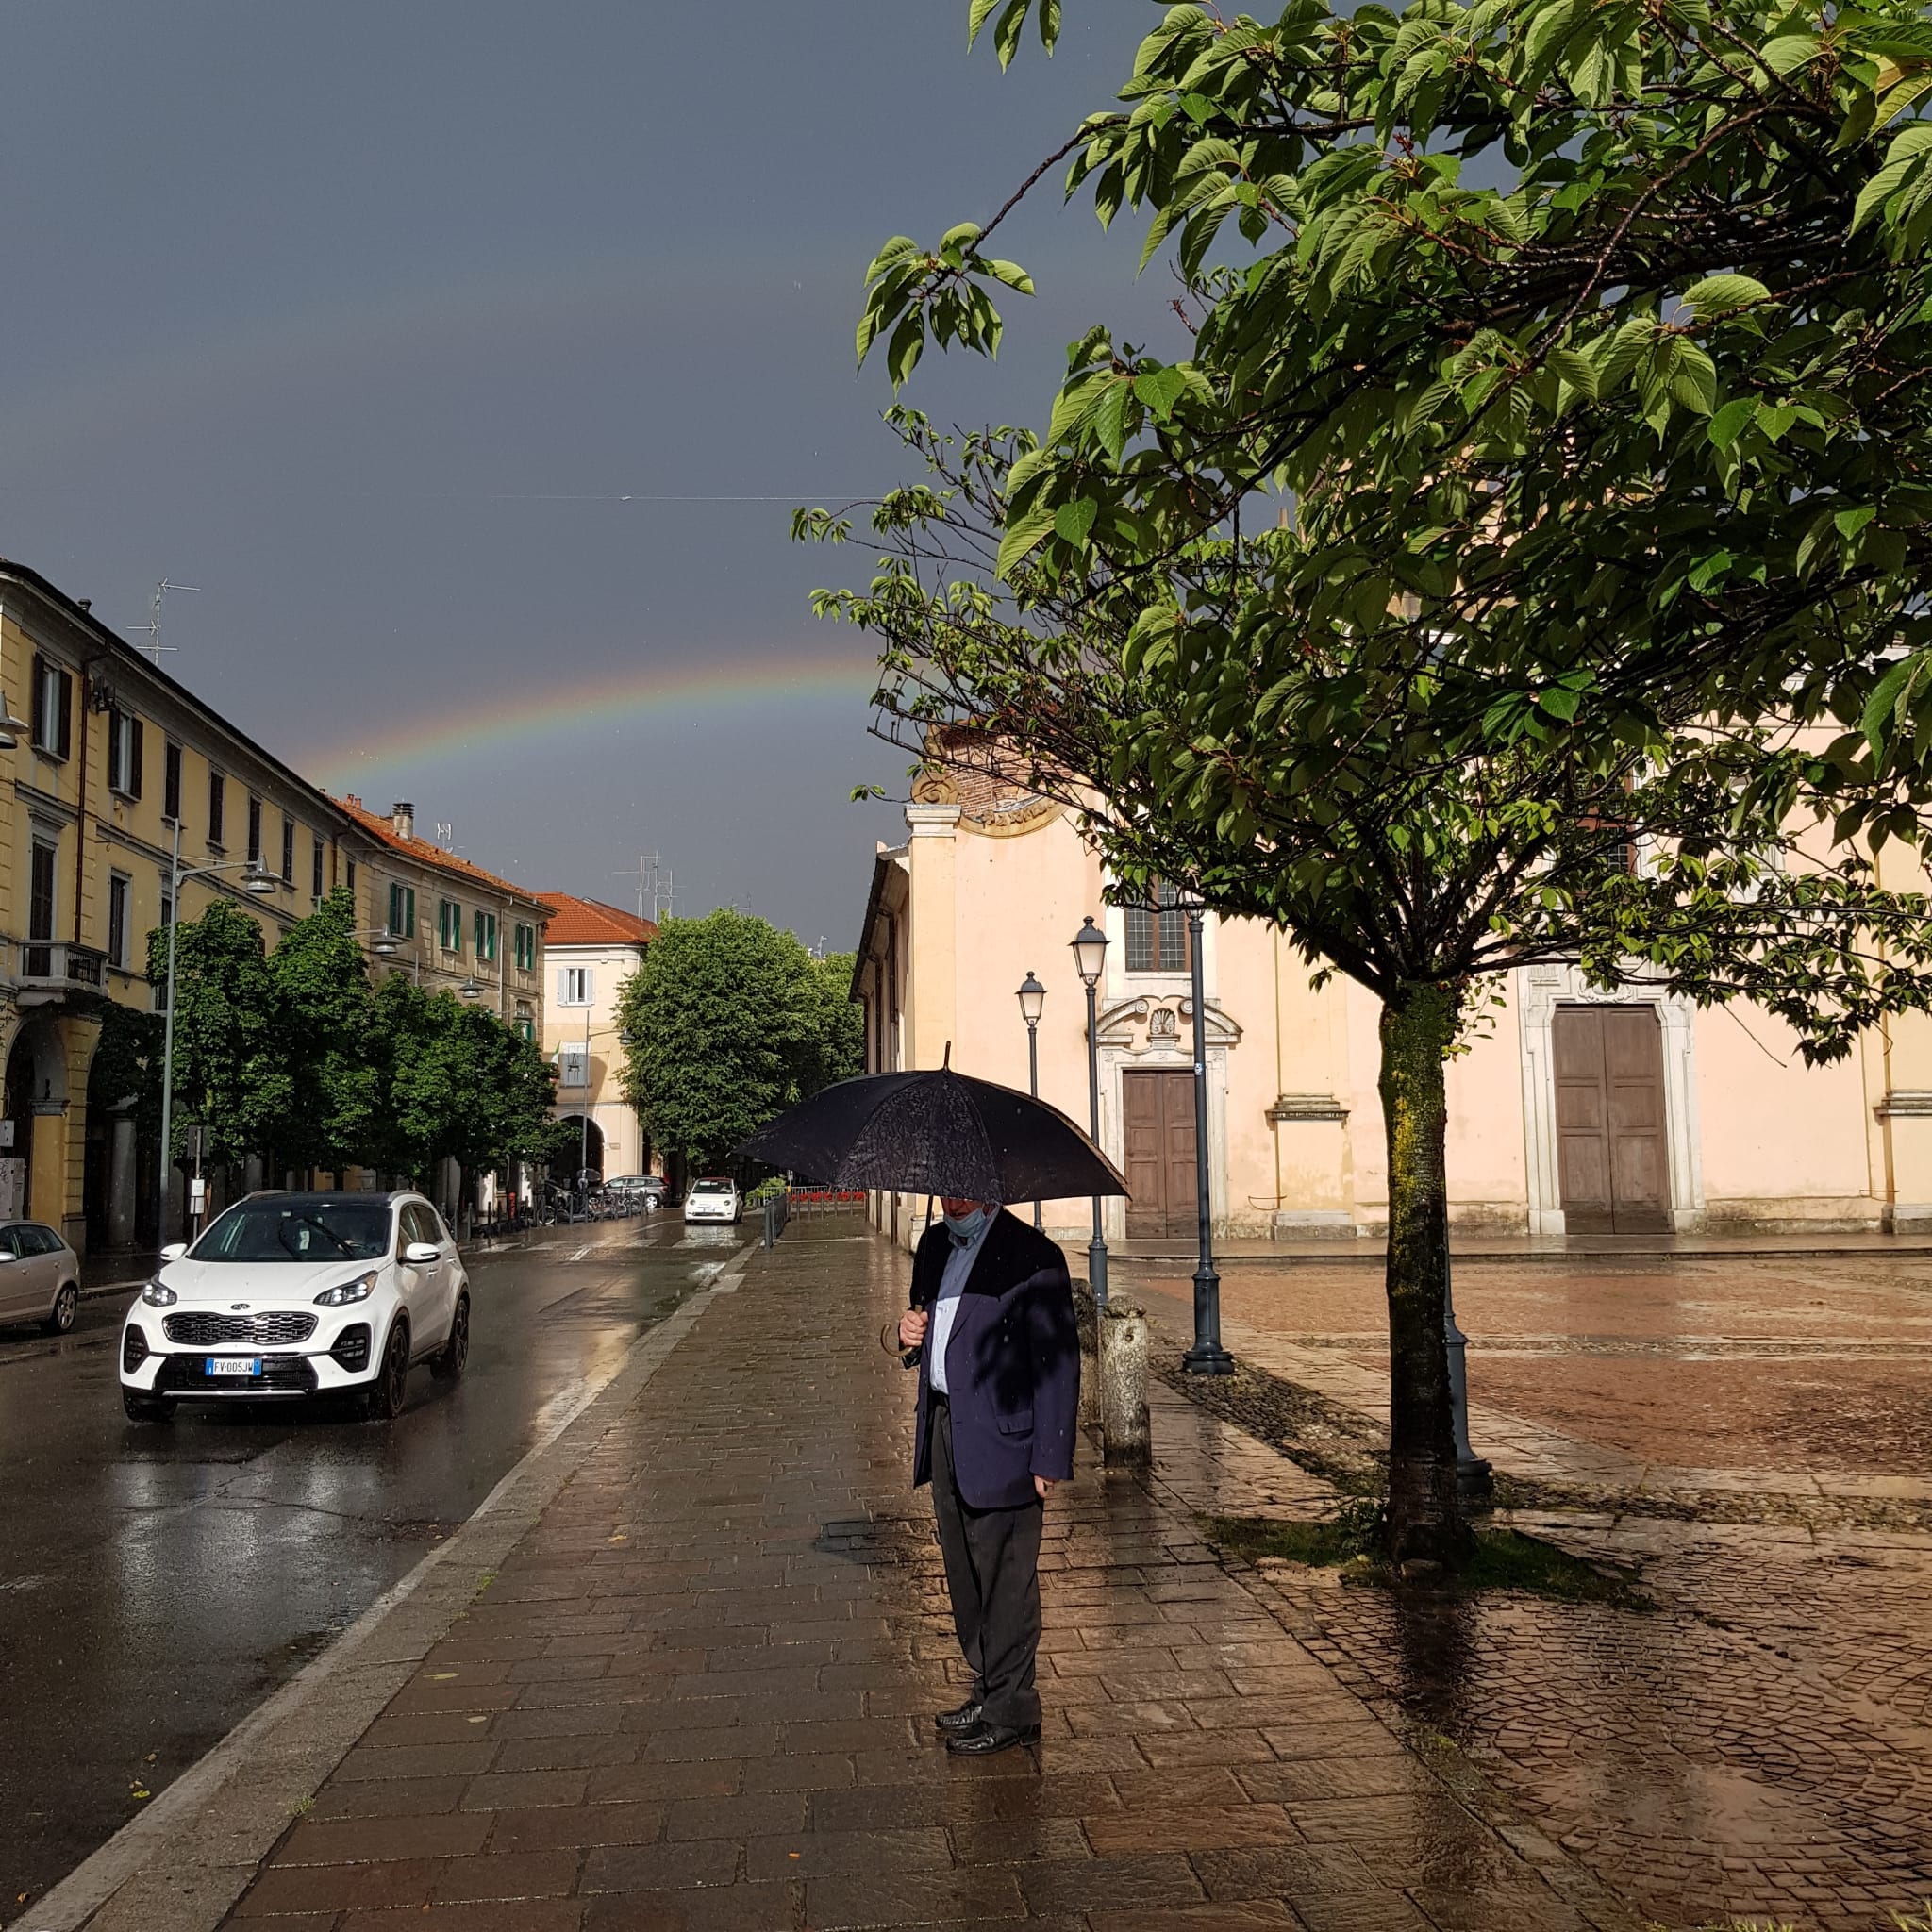 Maltempo, troppo bello l’arcobaleno in centro a Saronno. Il meteo di oggi